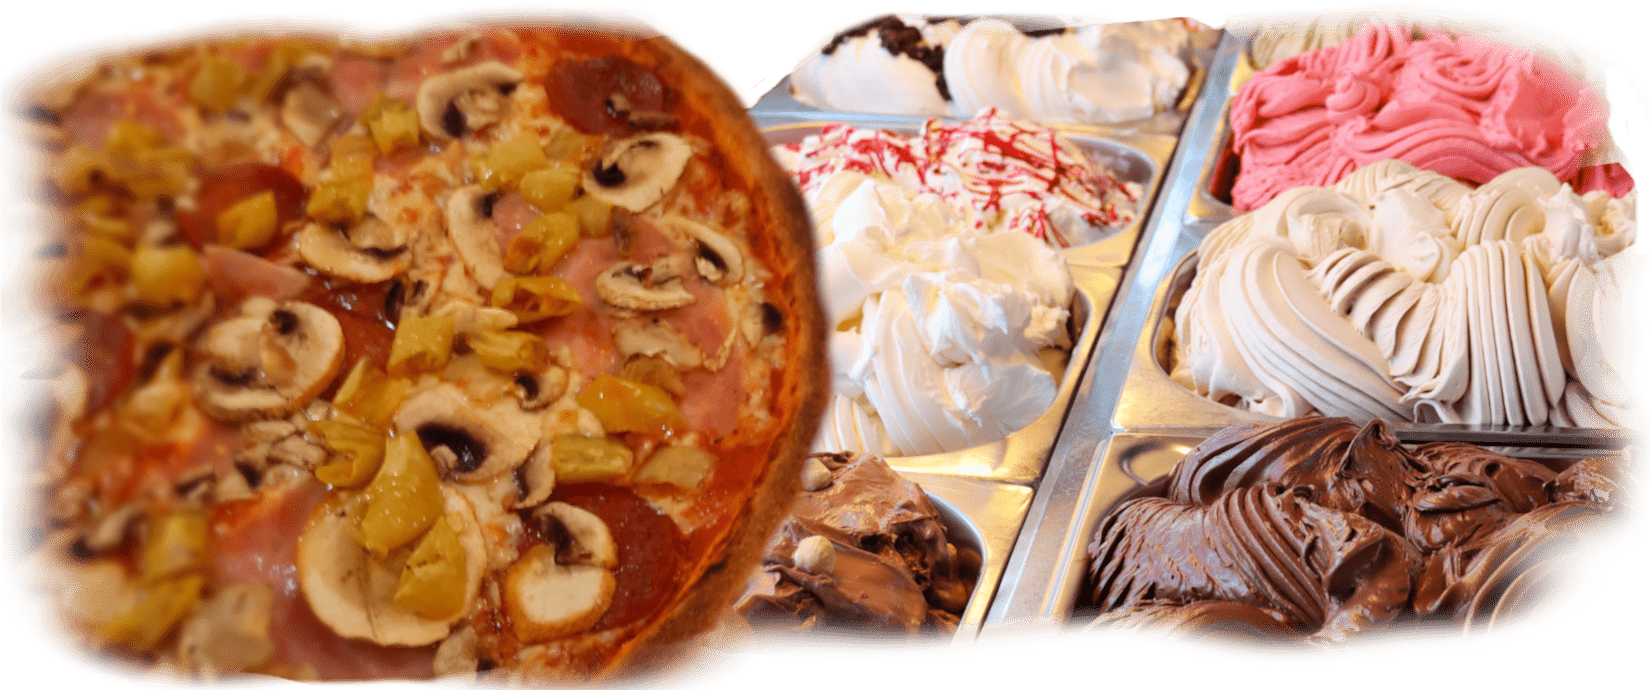 Pizza Pasta Lieferservice Lieferdienst für Stegaurach, Bamberg, Pizza Diavolo, Eis, Nudeln, Salat | Lieferservice, lecker Essen bestellen - Ihre Pizzeria in der Nähe